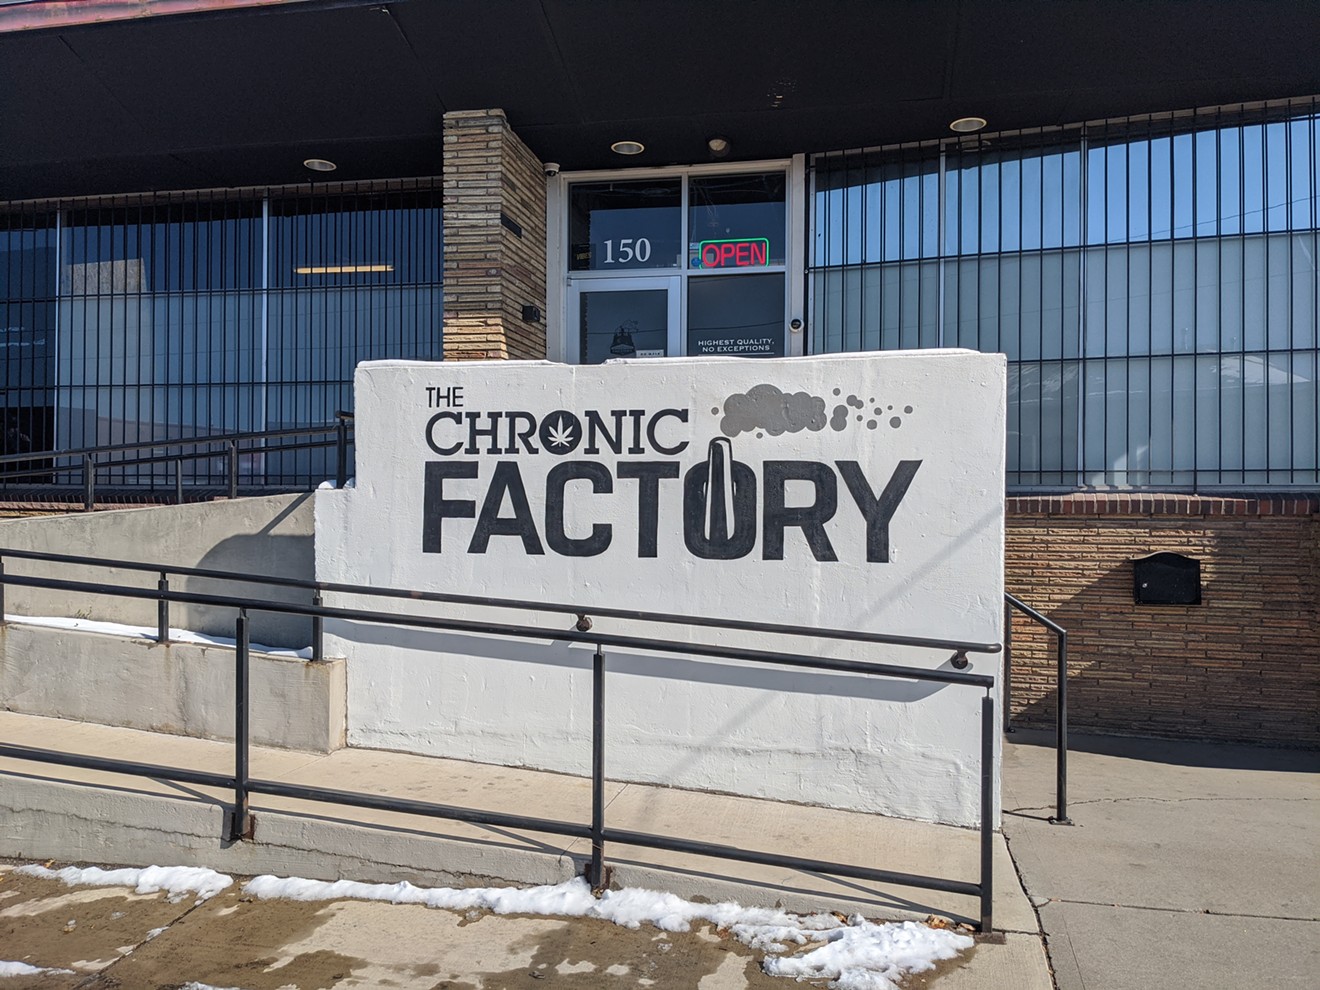 The Chronic Factory opened over the summer in Denver's Baker neighborhood.